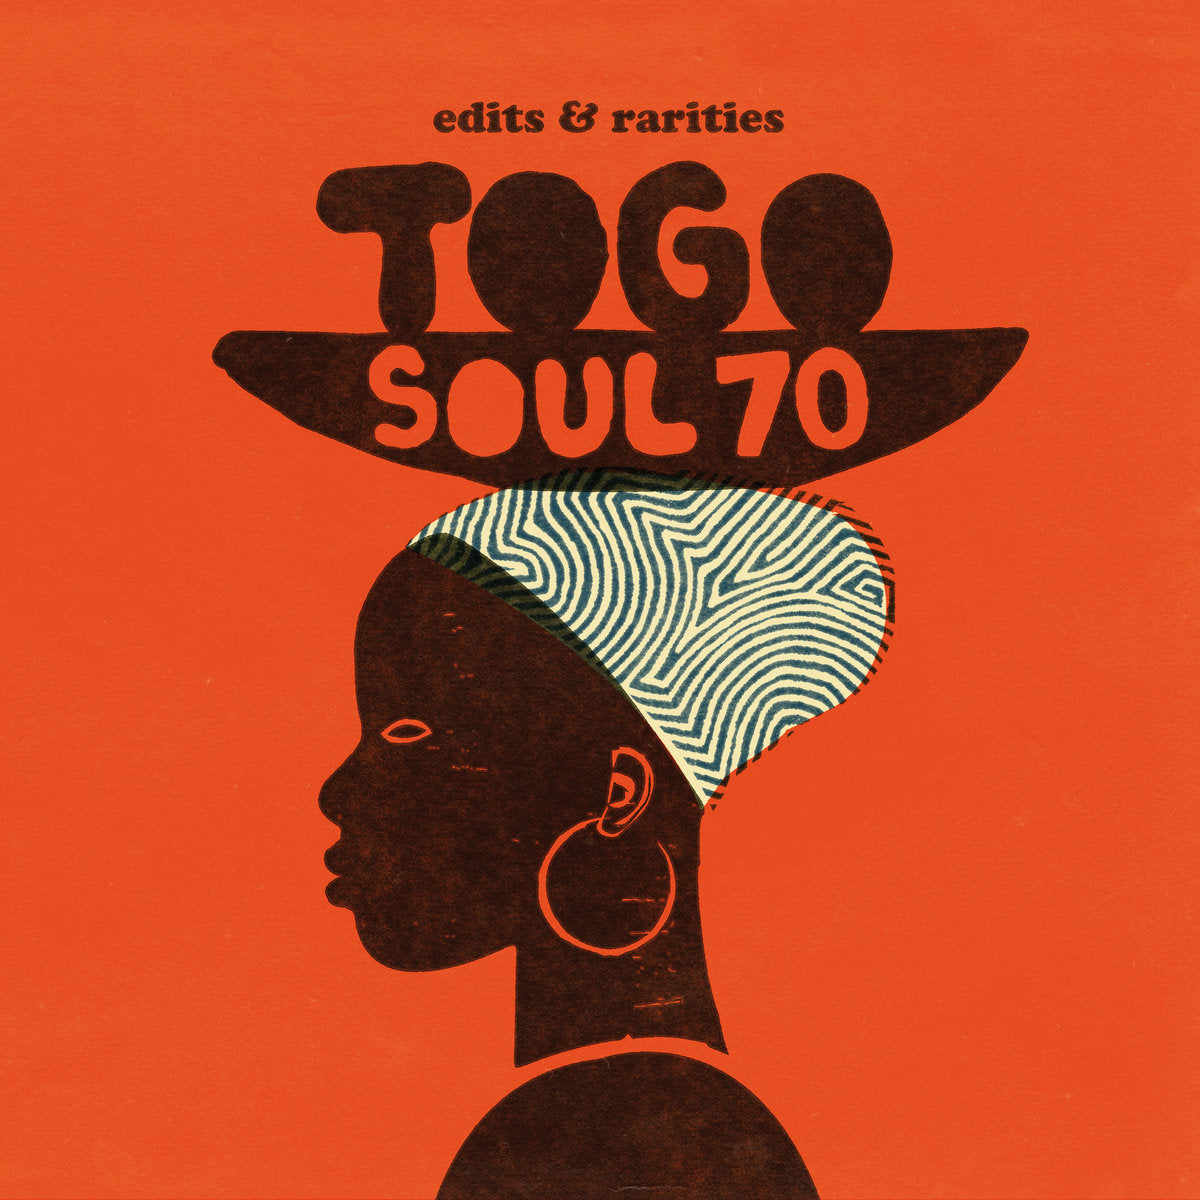 V/A - Togo Soul 70 - Edits & Rarities - 12"